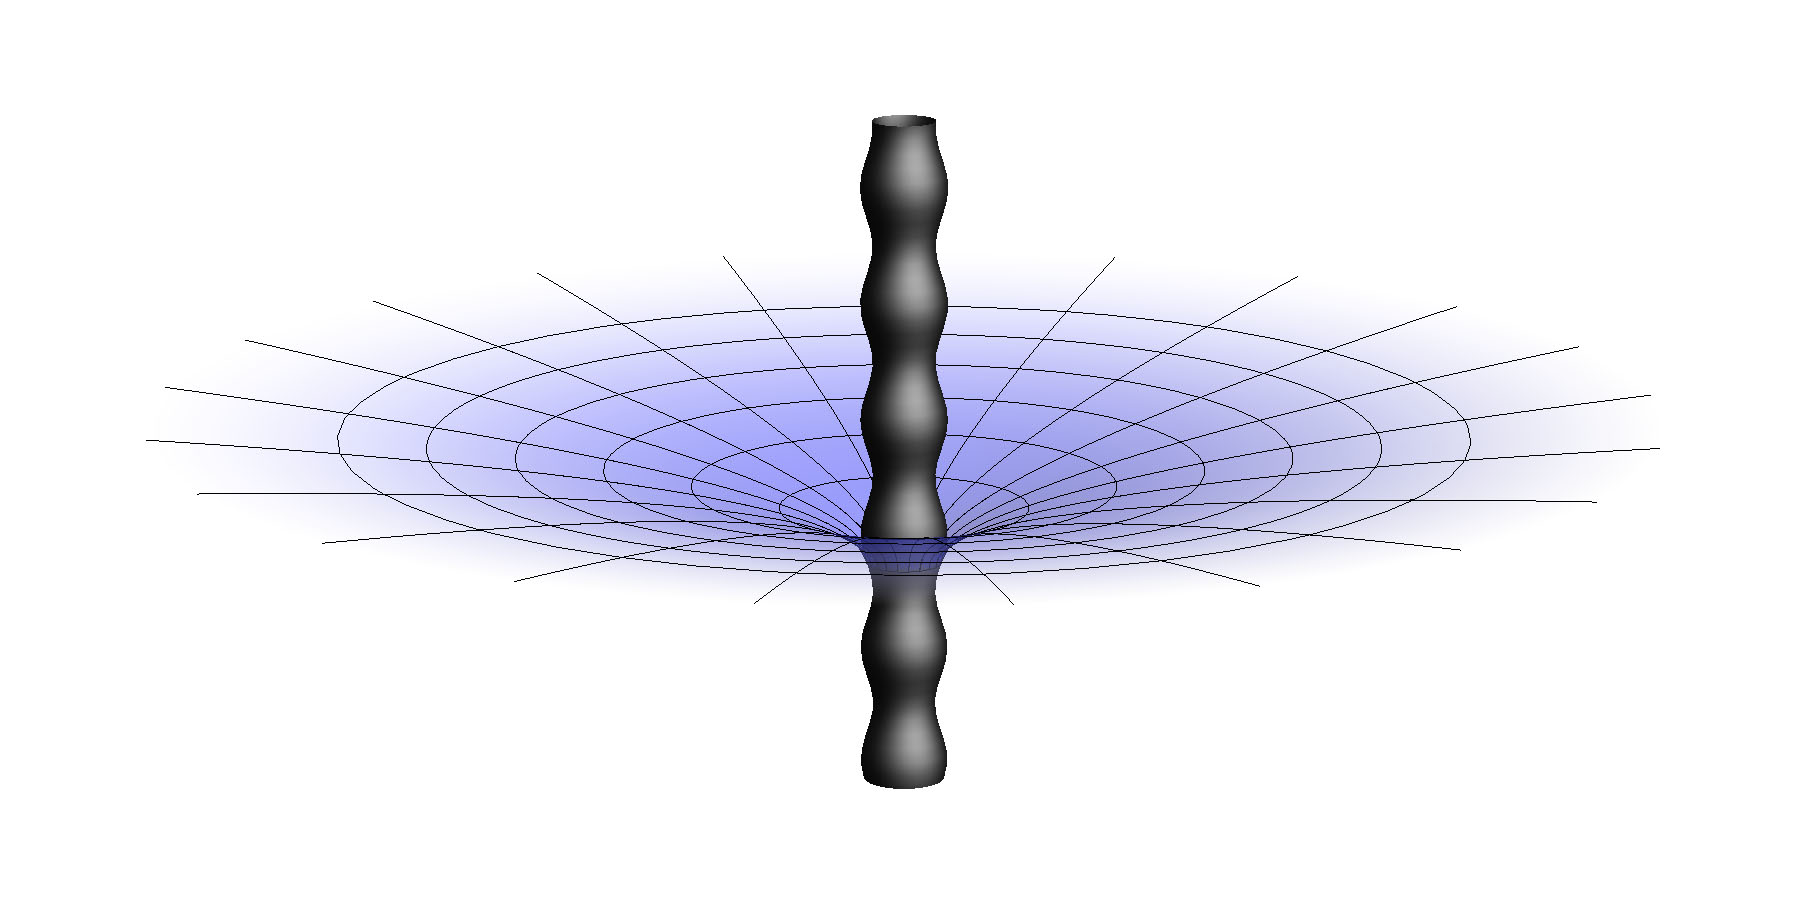 Hình minh họa một lỗ đen “dây đen” cùng với các nhiễu loạn